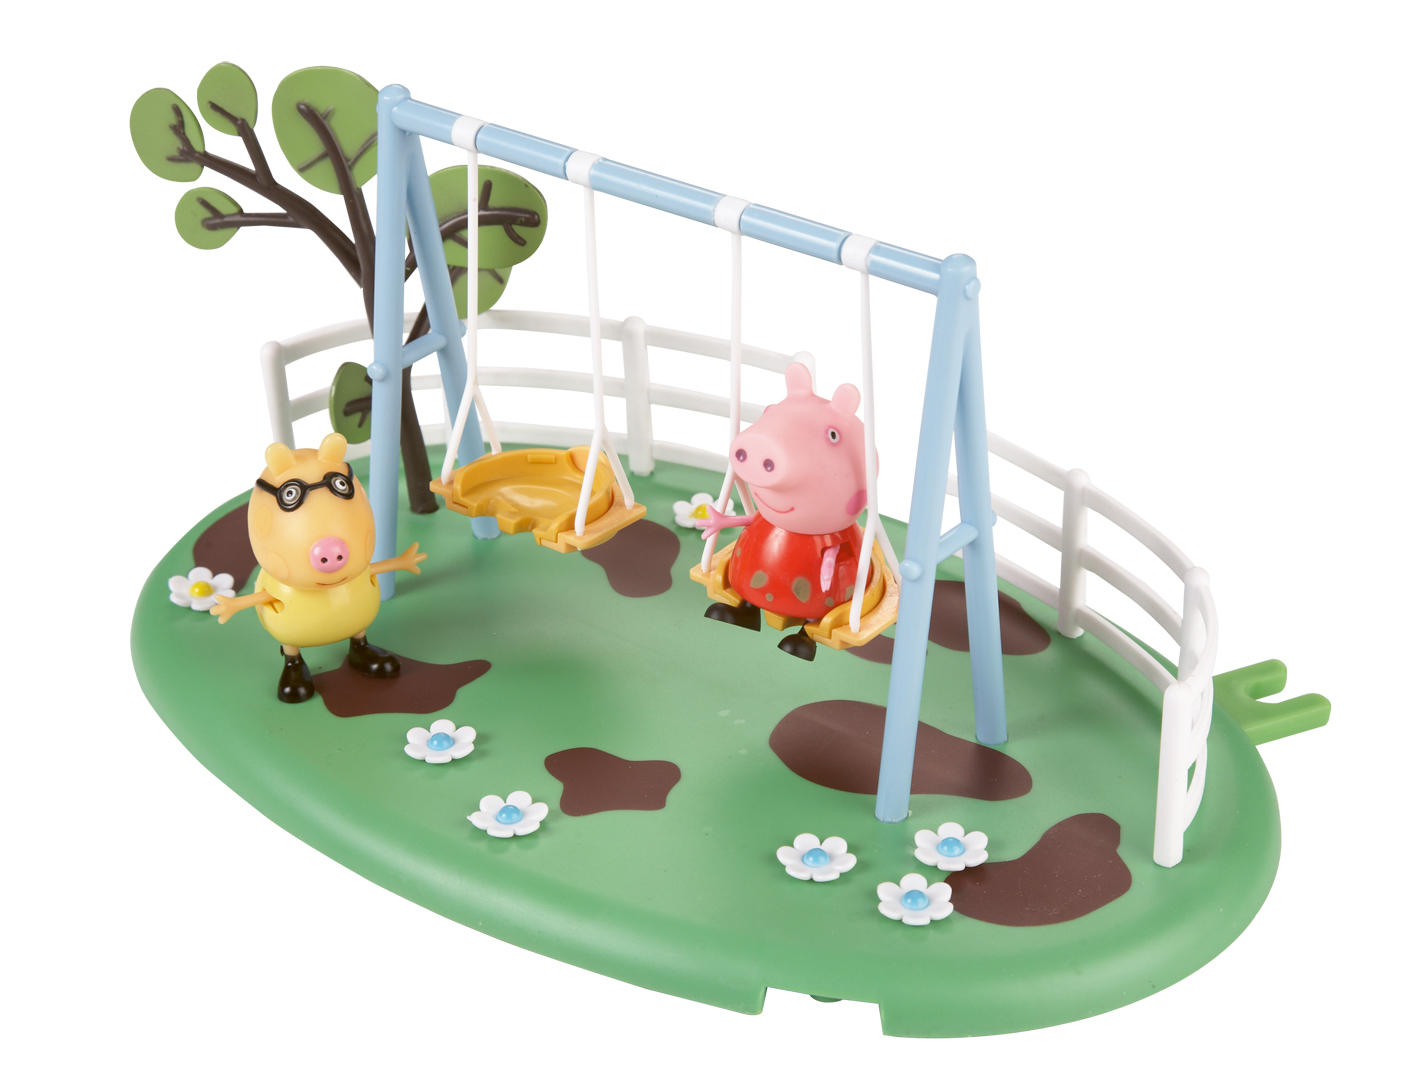 Peppa Pig Peppa - Playtime Fun Playsets- Swing